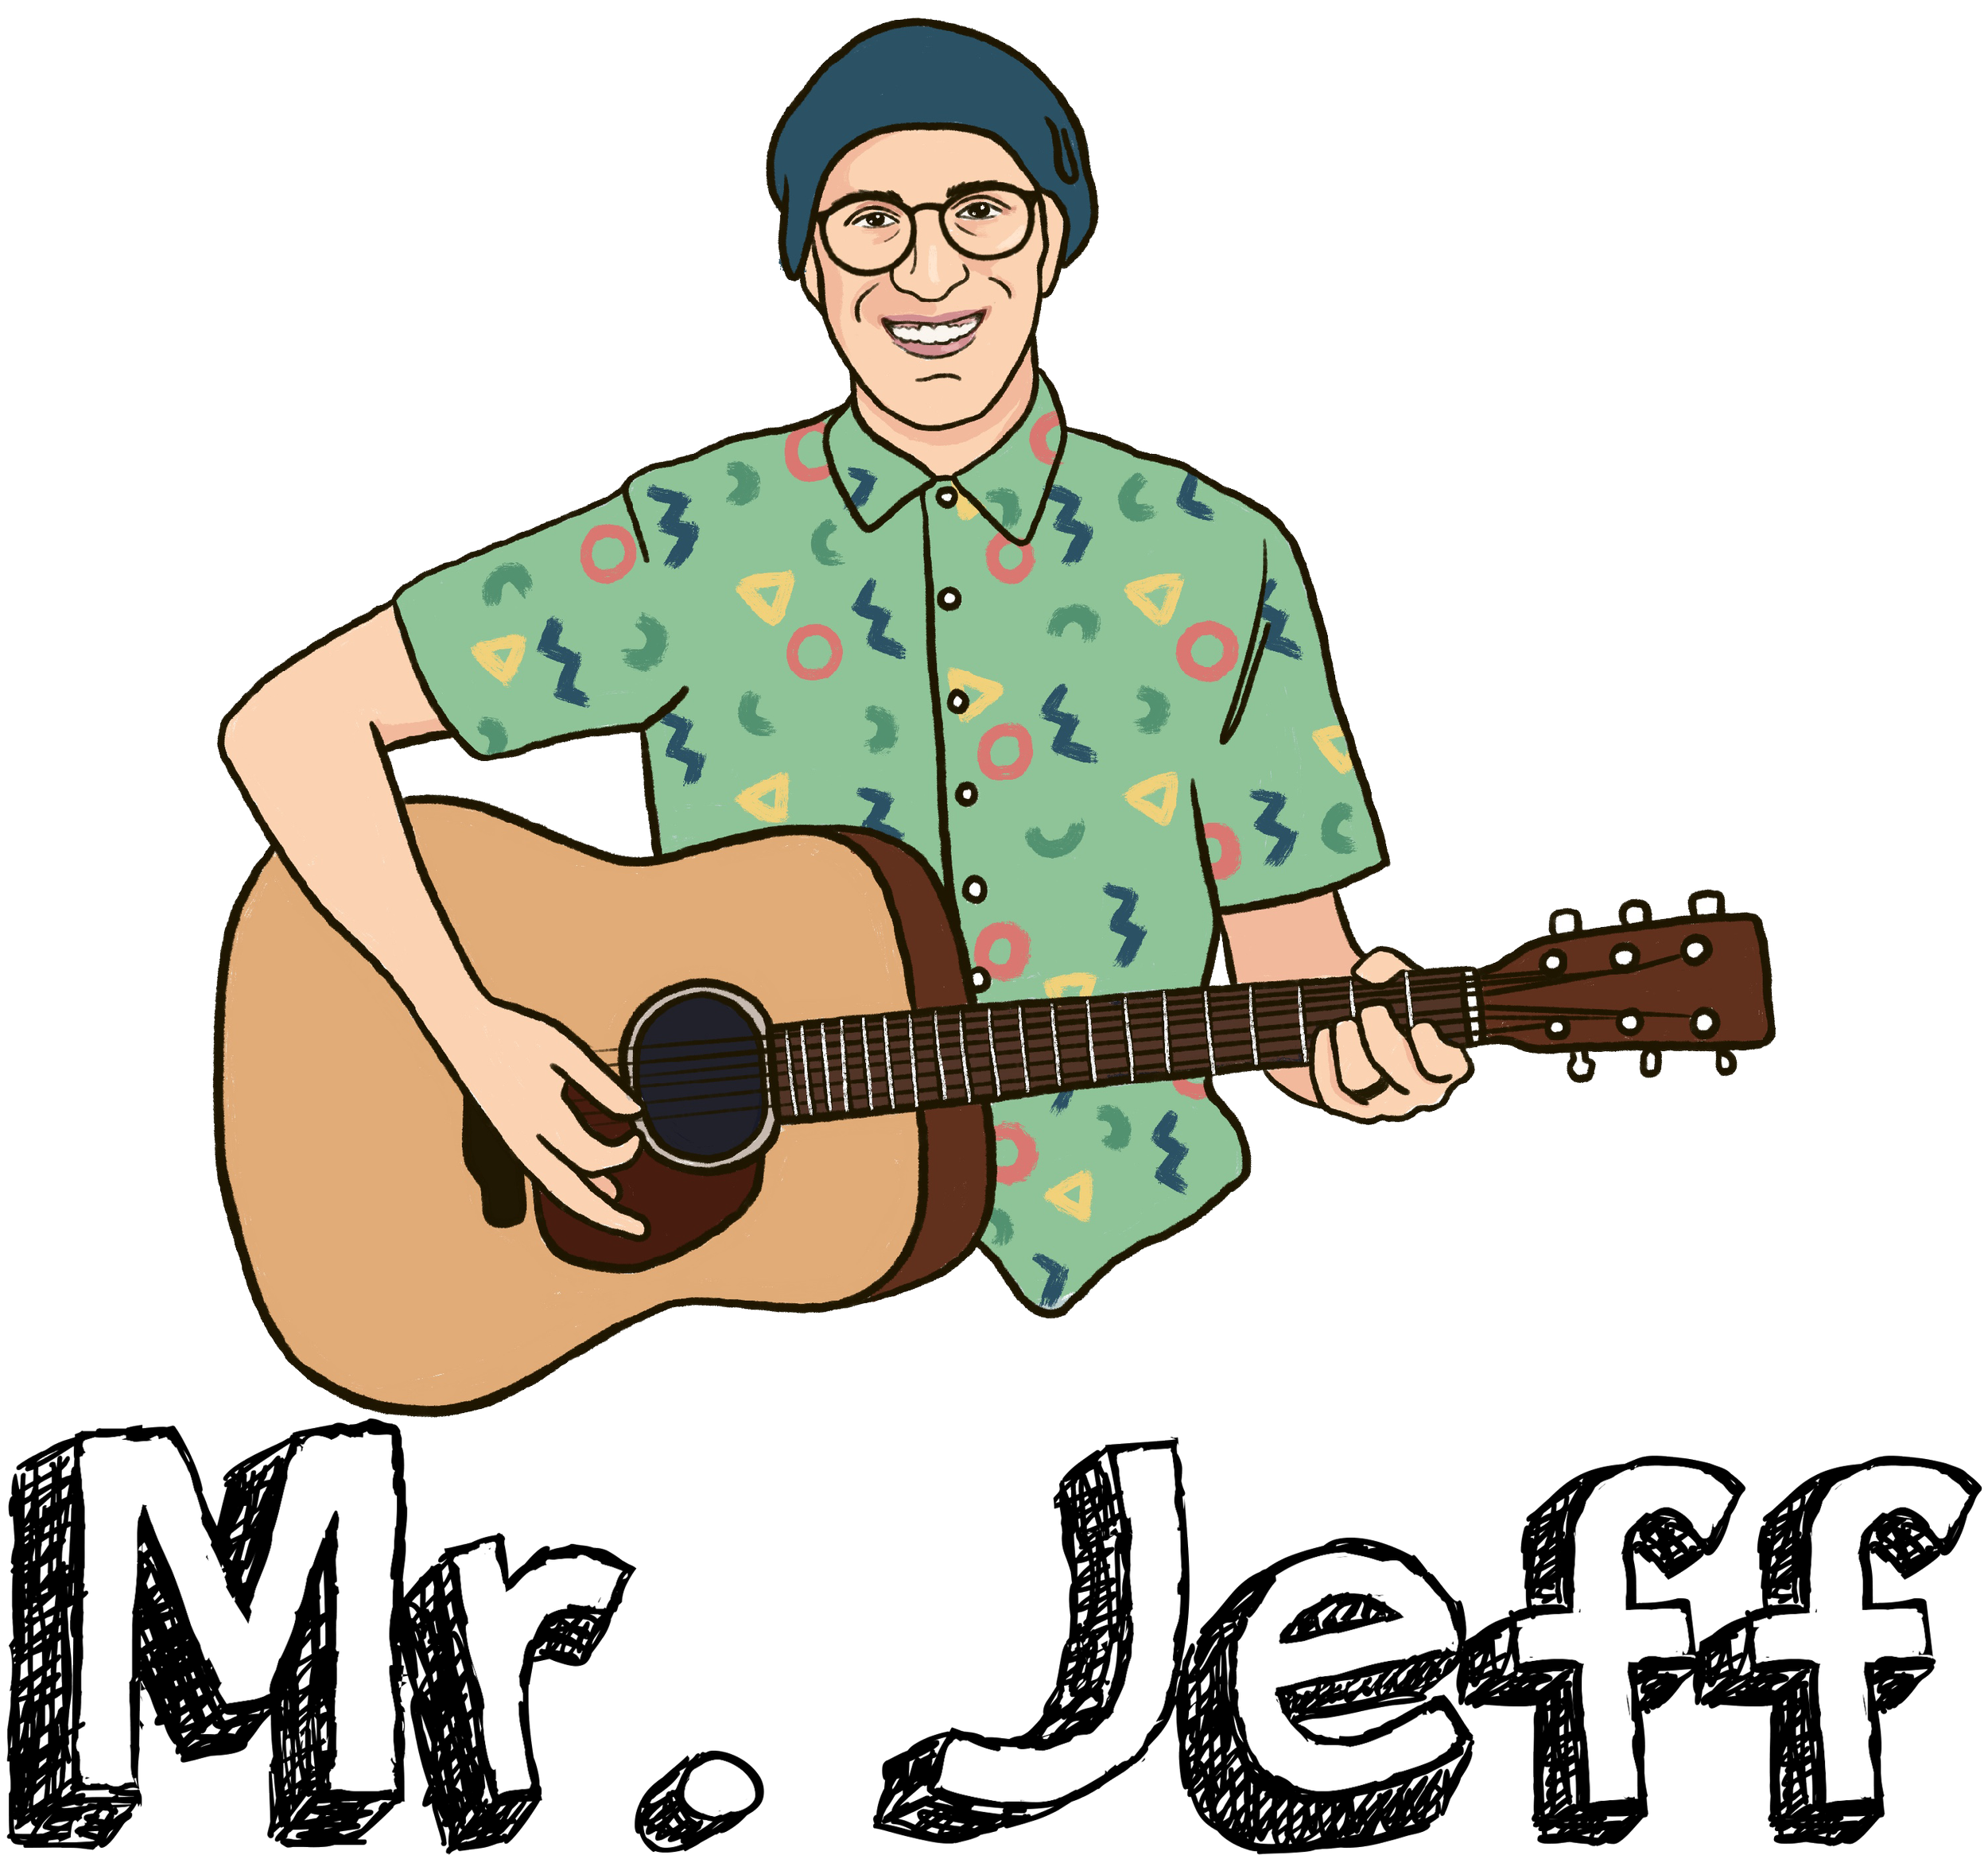 Mr. Jeff